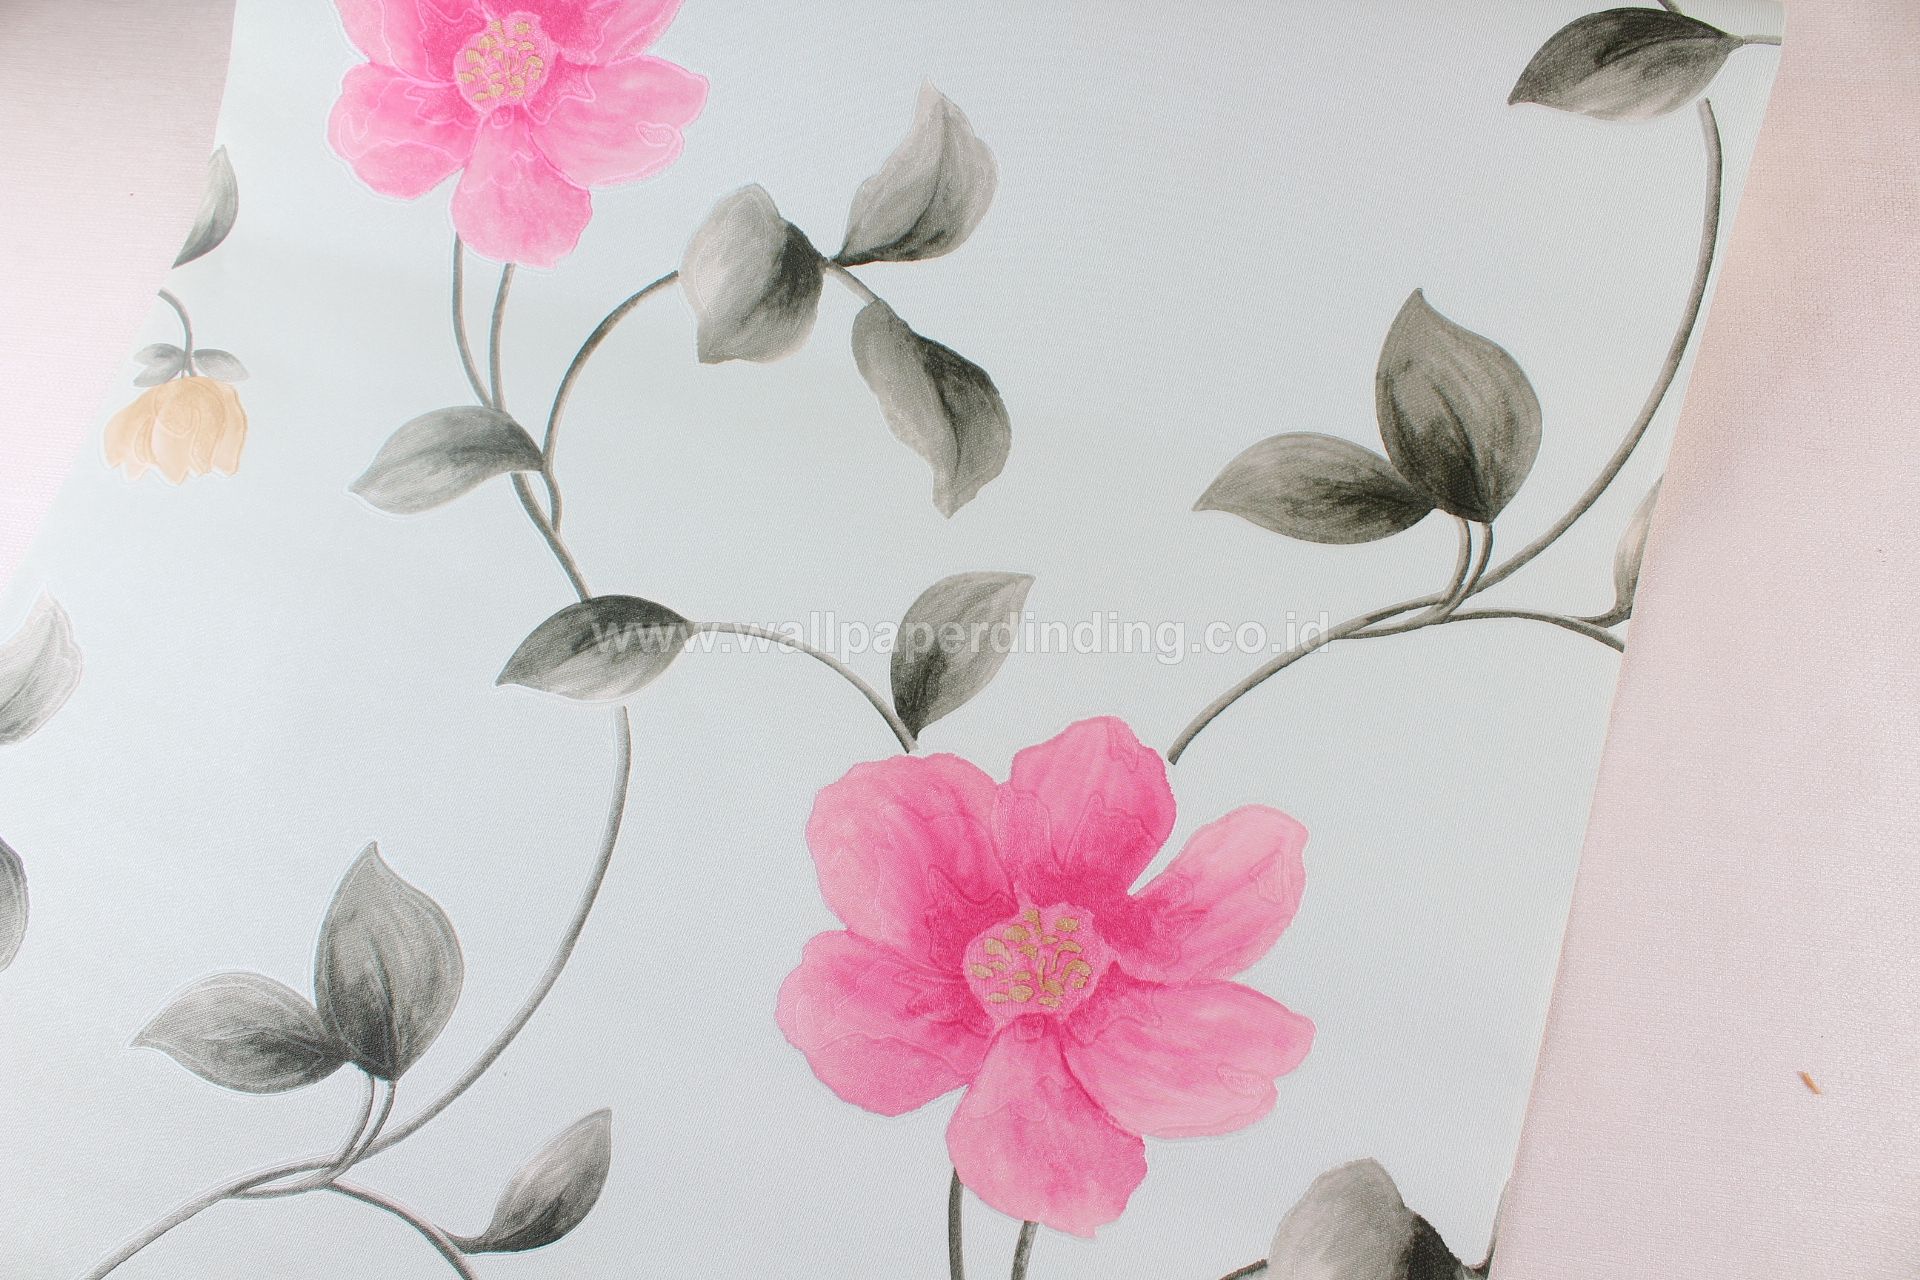 Wallpaper Dinding Bunga Pink Hijau Tosca Co 812 3 - Bunga Hijau Tosca , HD Wallpaper & Backgrounds